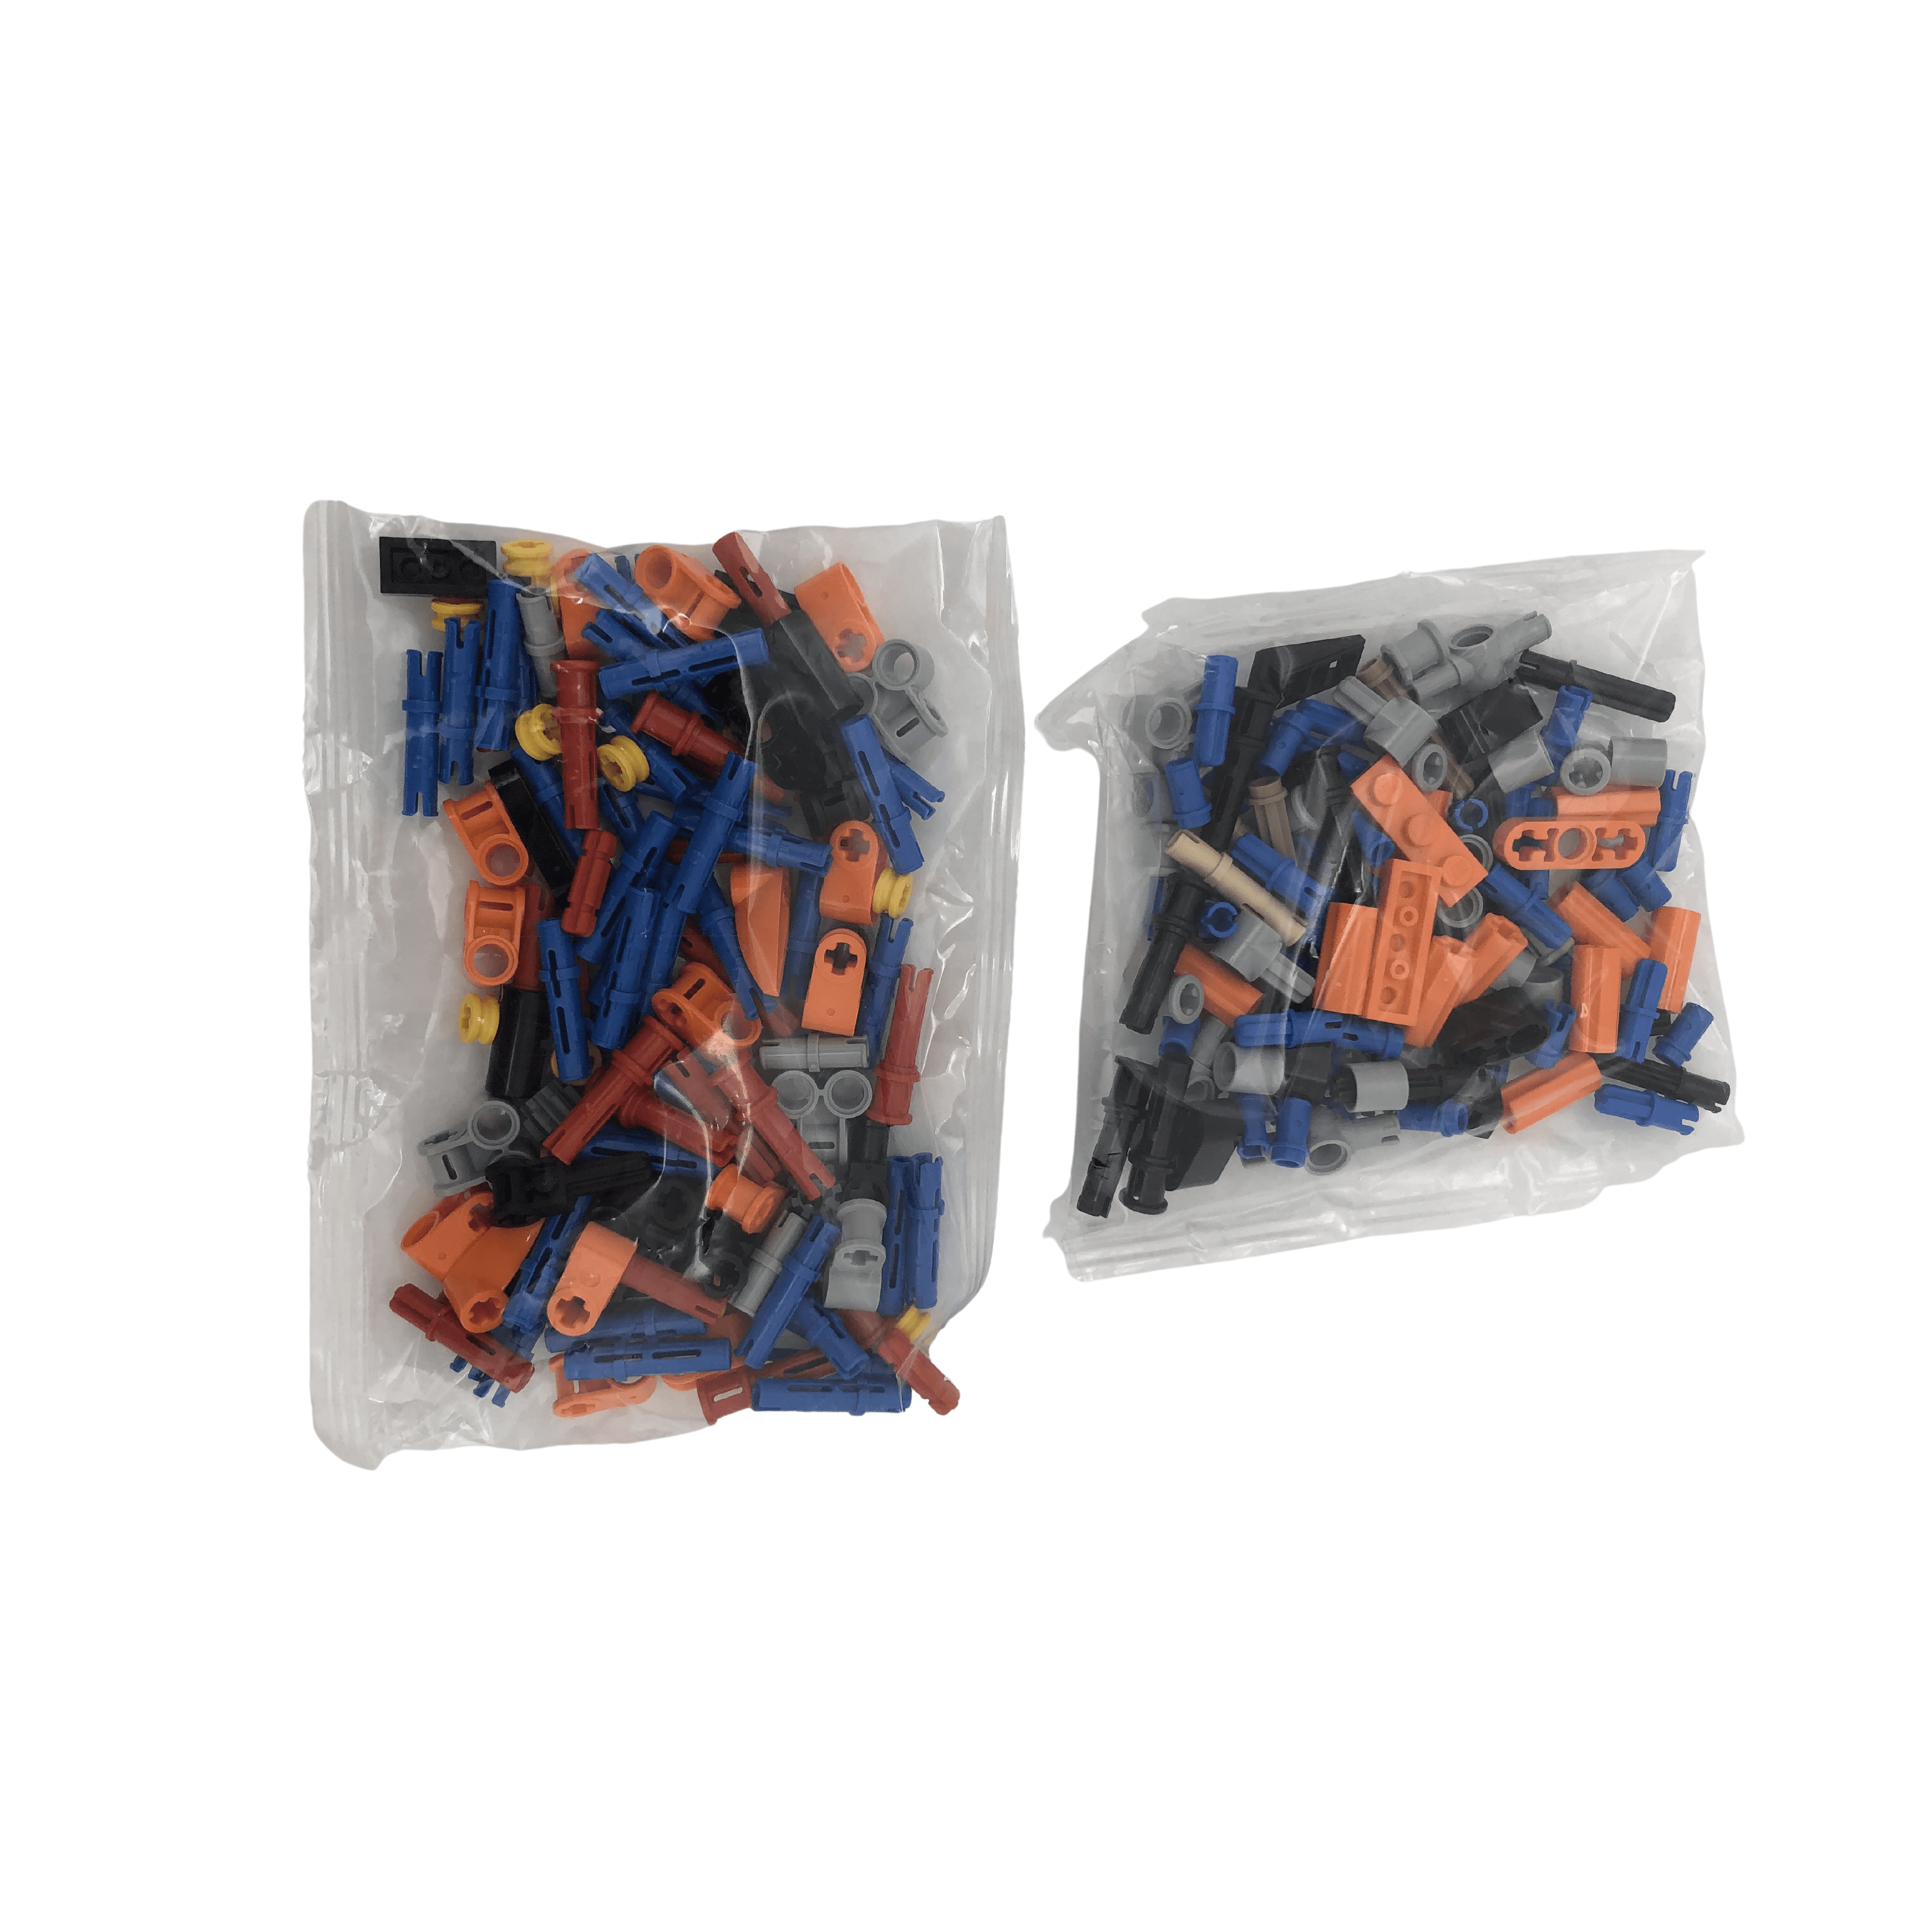 Lego Technic 2-in-1 Corvette / Building Set / 42093 / 579 Pieces **DEALS**